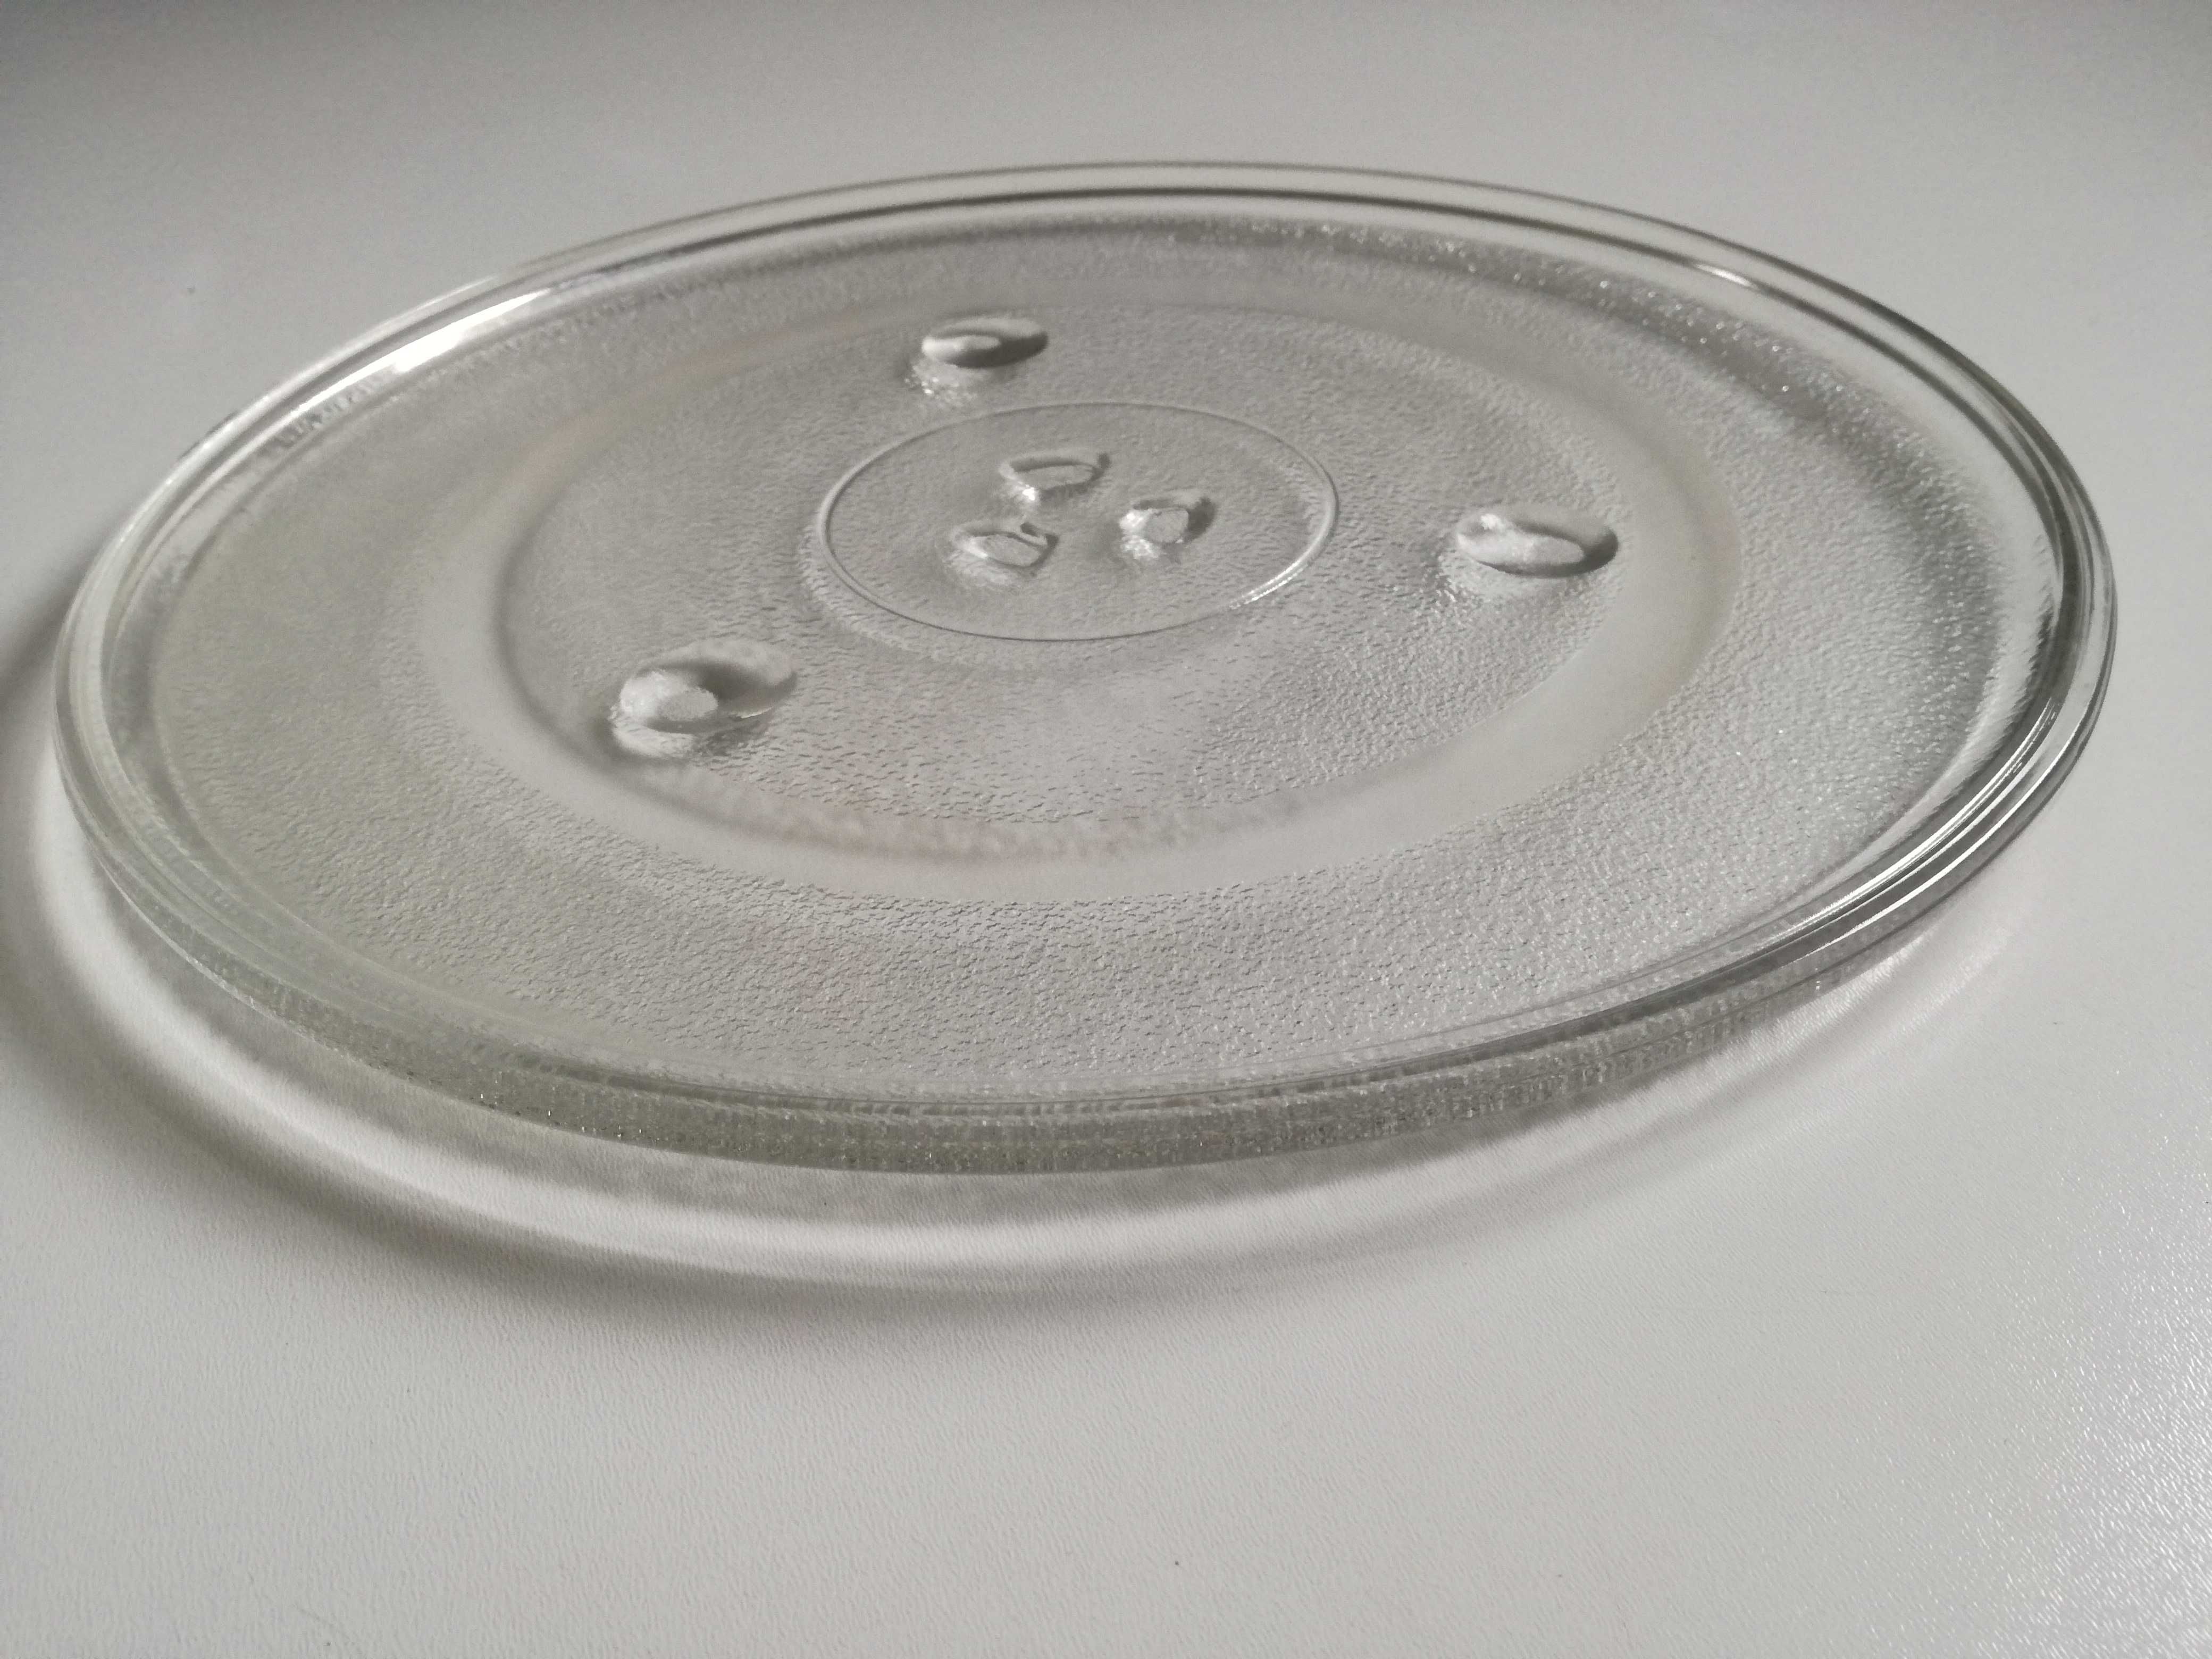 Duży talerz do kuchenki mikrofalowej mikrofali 31,5 cm